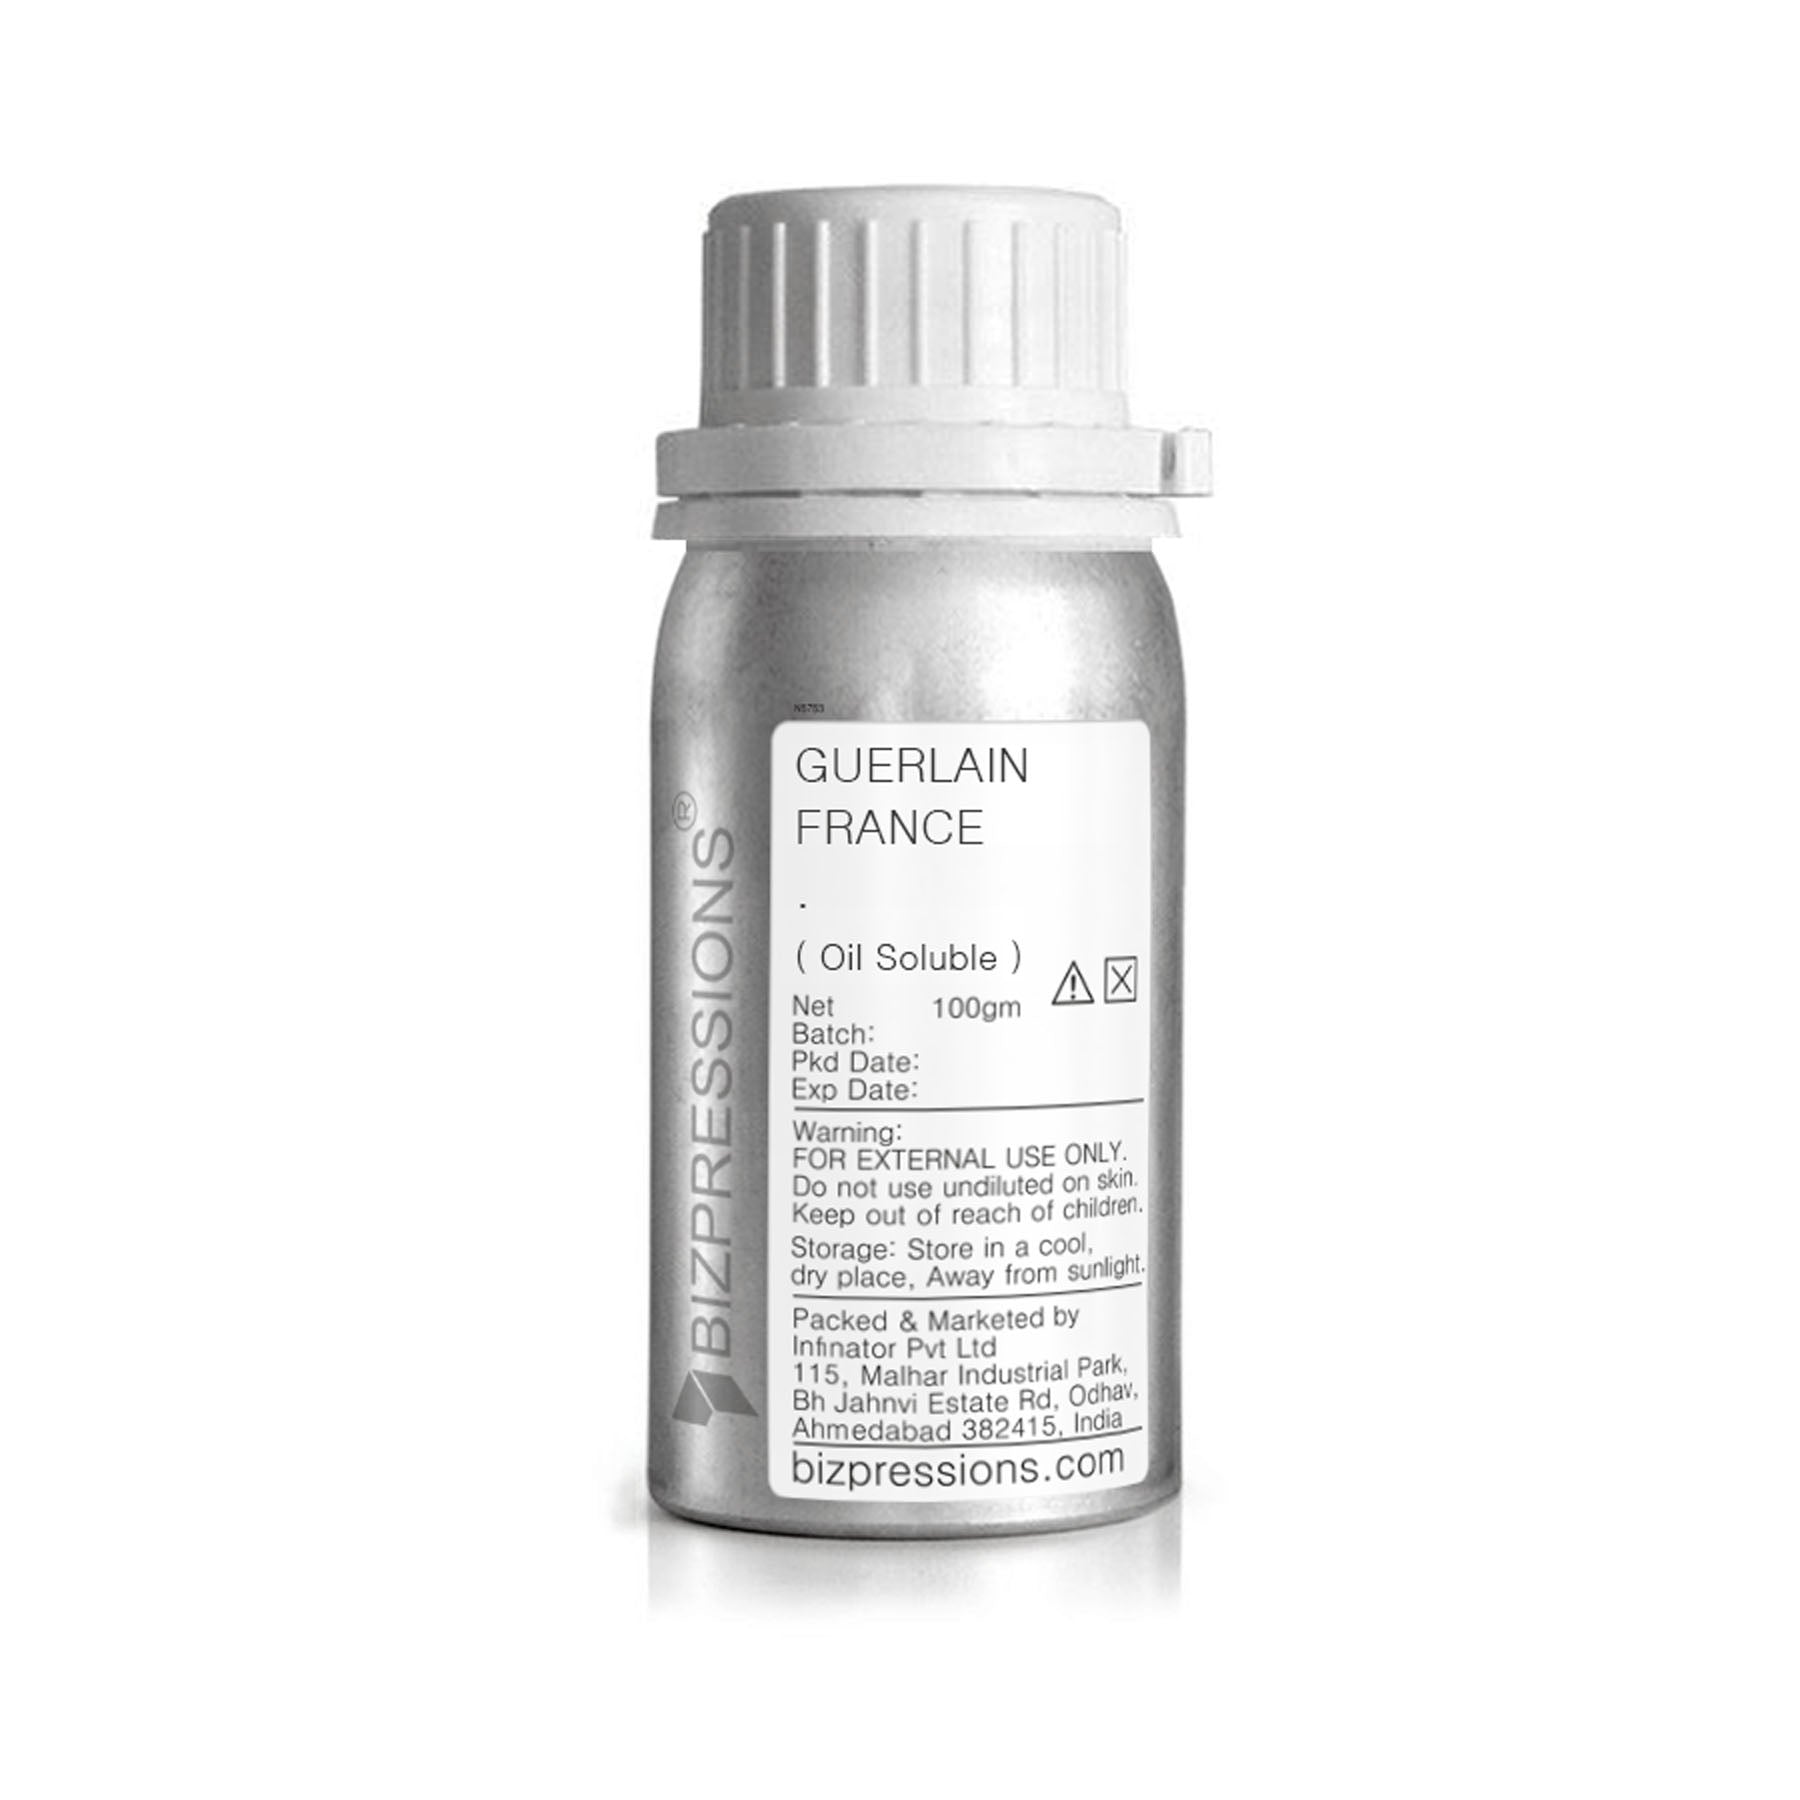 GUERLAIN FRANCE - Fragrance ( Oil Soluble ) - 100 gm